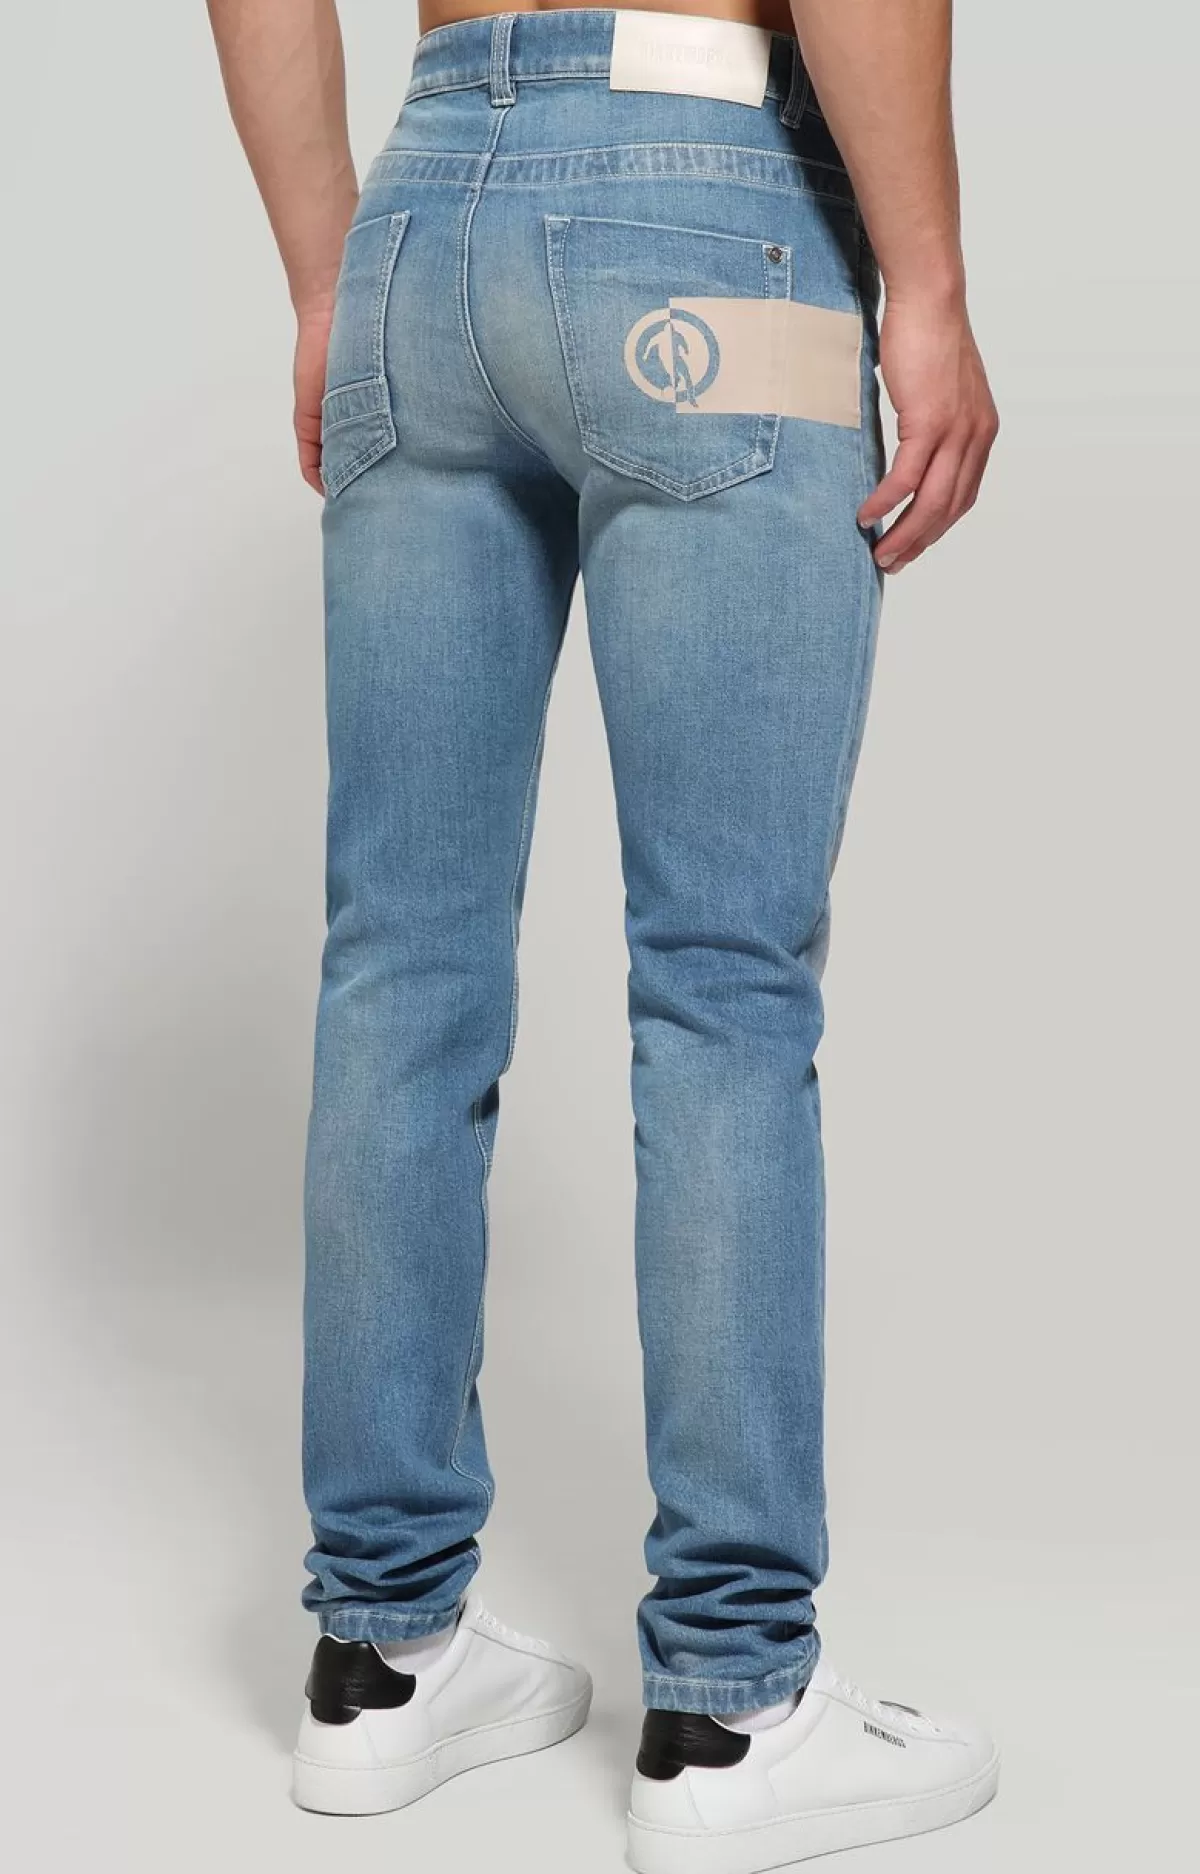 Bikkembergs Men'S Slim Fit Jeans With Printed Back Blue Denim Flash Sale